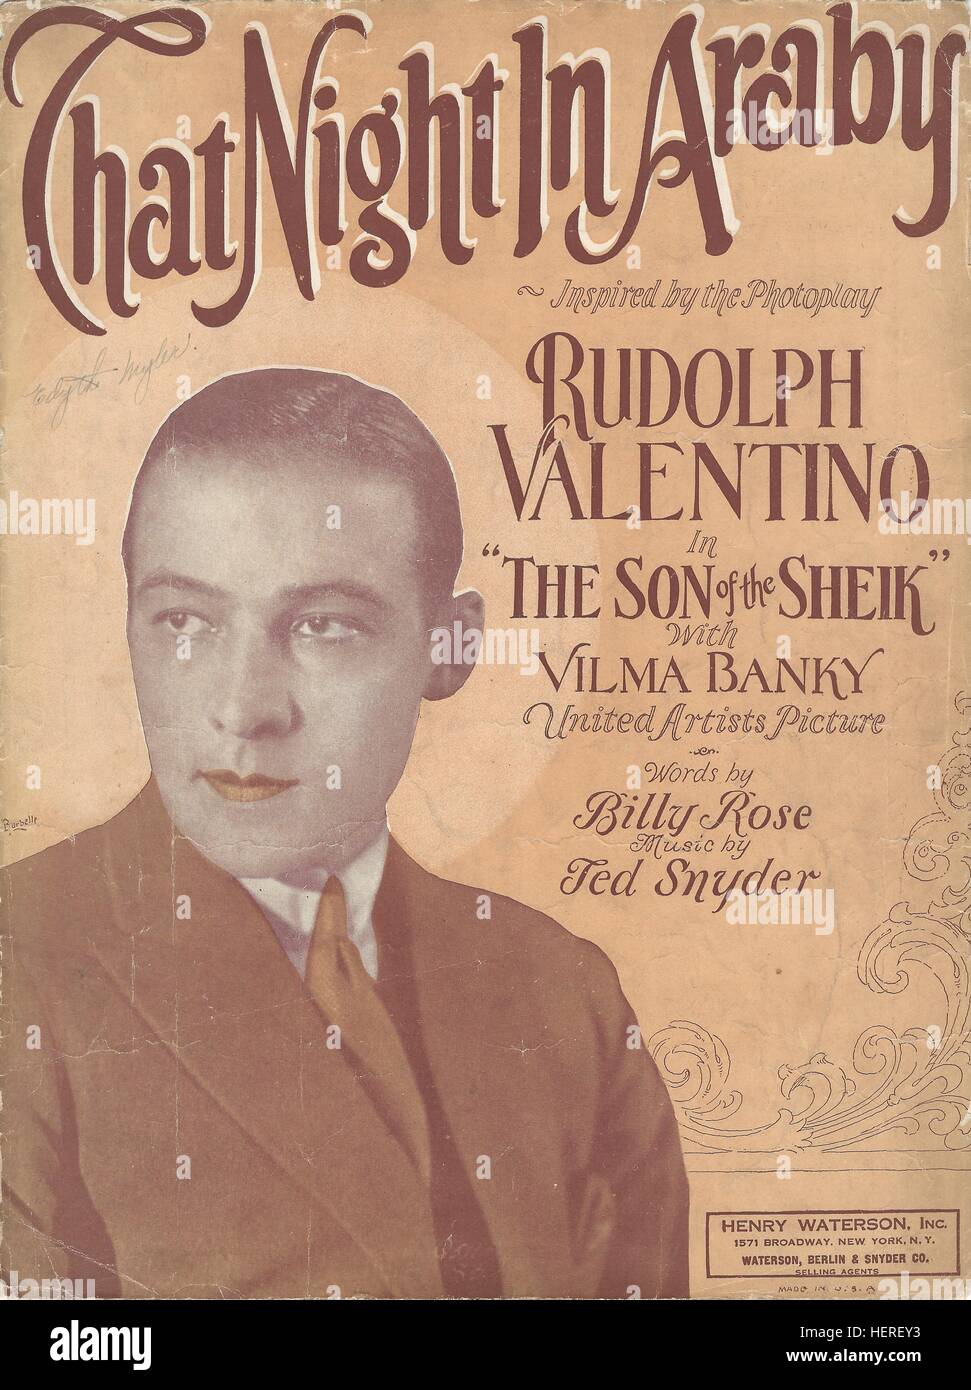 "Cette nuit-là à Araby' 1926 Rudolph Valentino 'le fils du cheik" sur les couvertures des musiques de film Banque D'Images